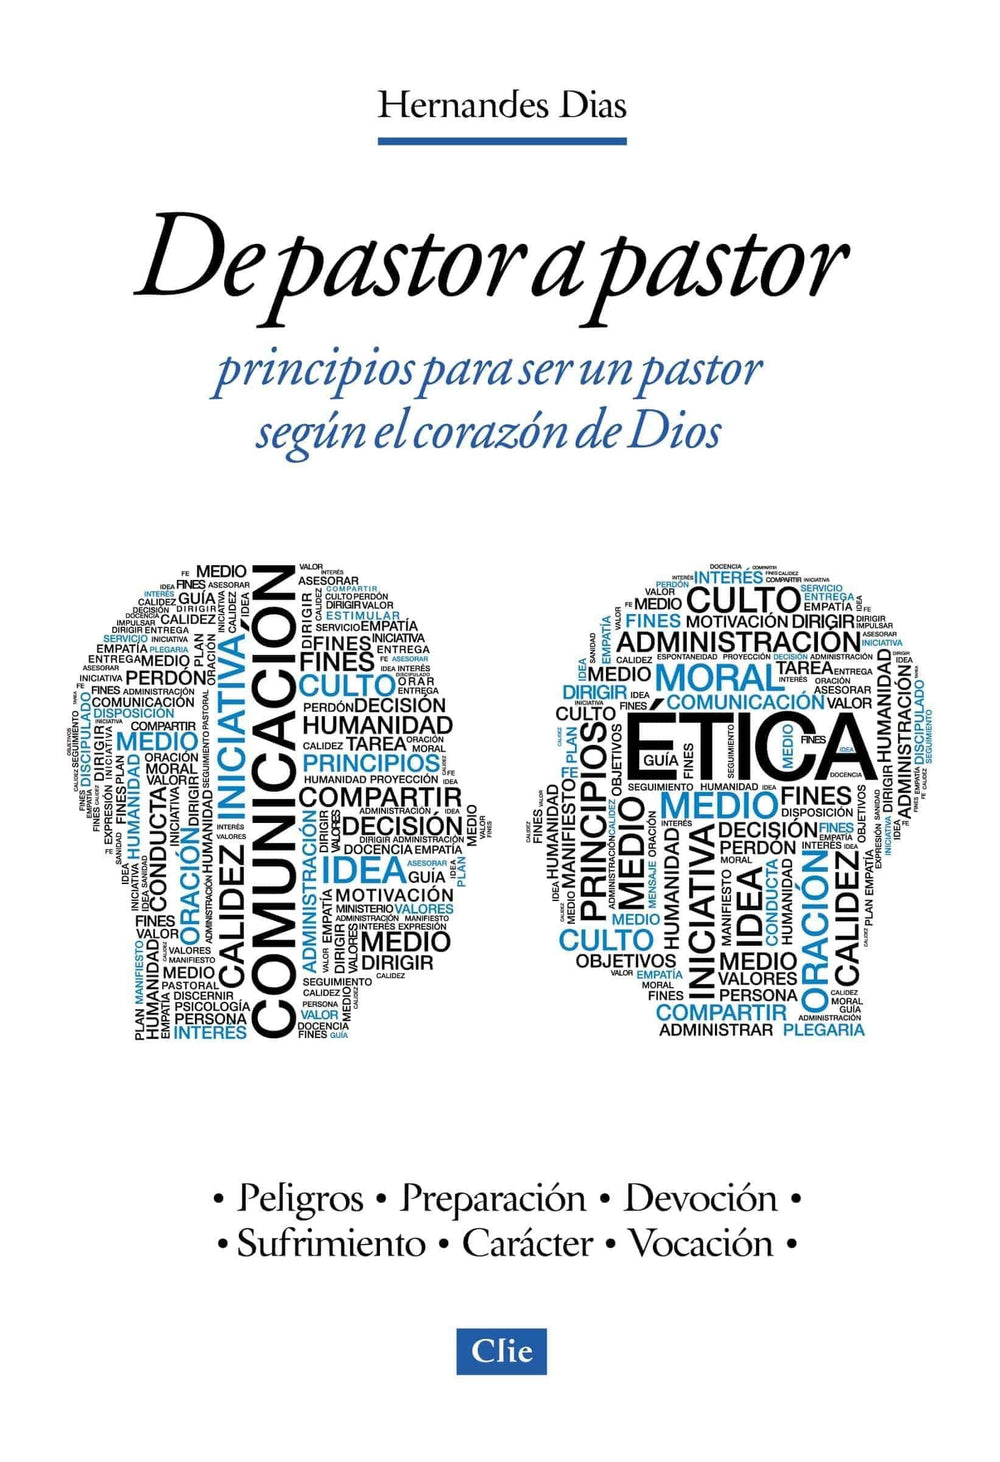 De pastor a pastor: Principios para un pastor según el corazón de Dios - Hernandes Dias-Lopes - Pura Vida Books